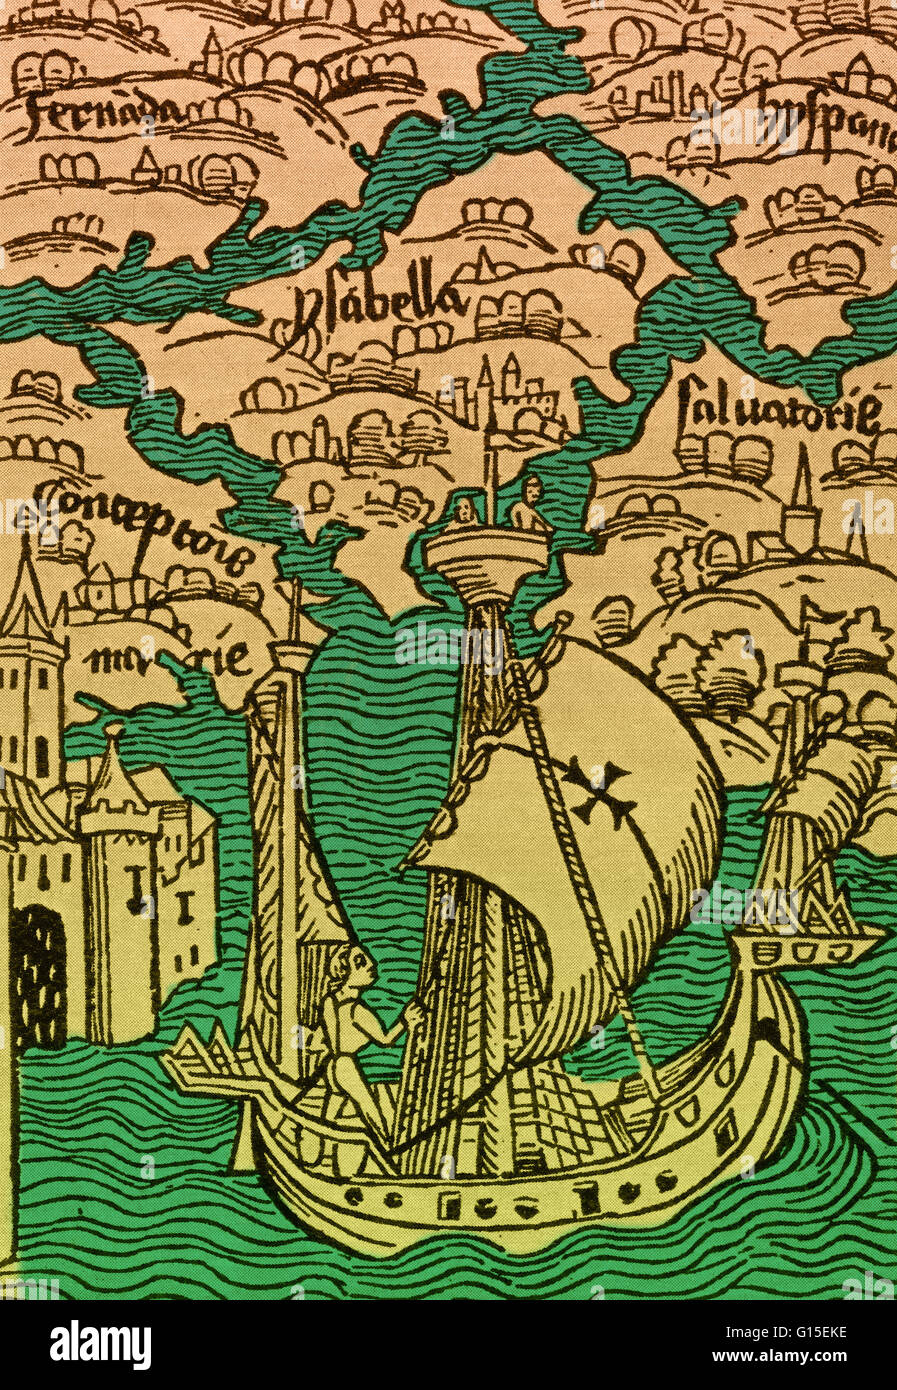 Le isole scoperte da Colombo, dall'edizione illustrata del Columbus lettera a Gabriel Sanchez, pubblicata a Basilea un anno dopo il primo viaggio nel 1492. Foto Stock